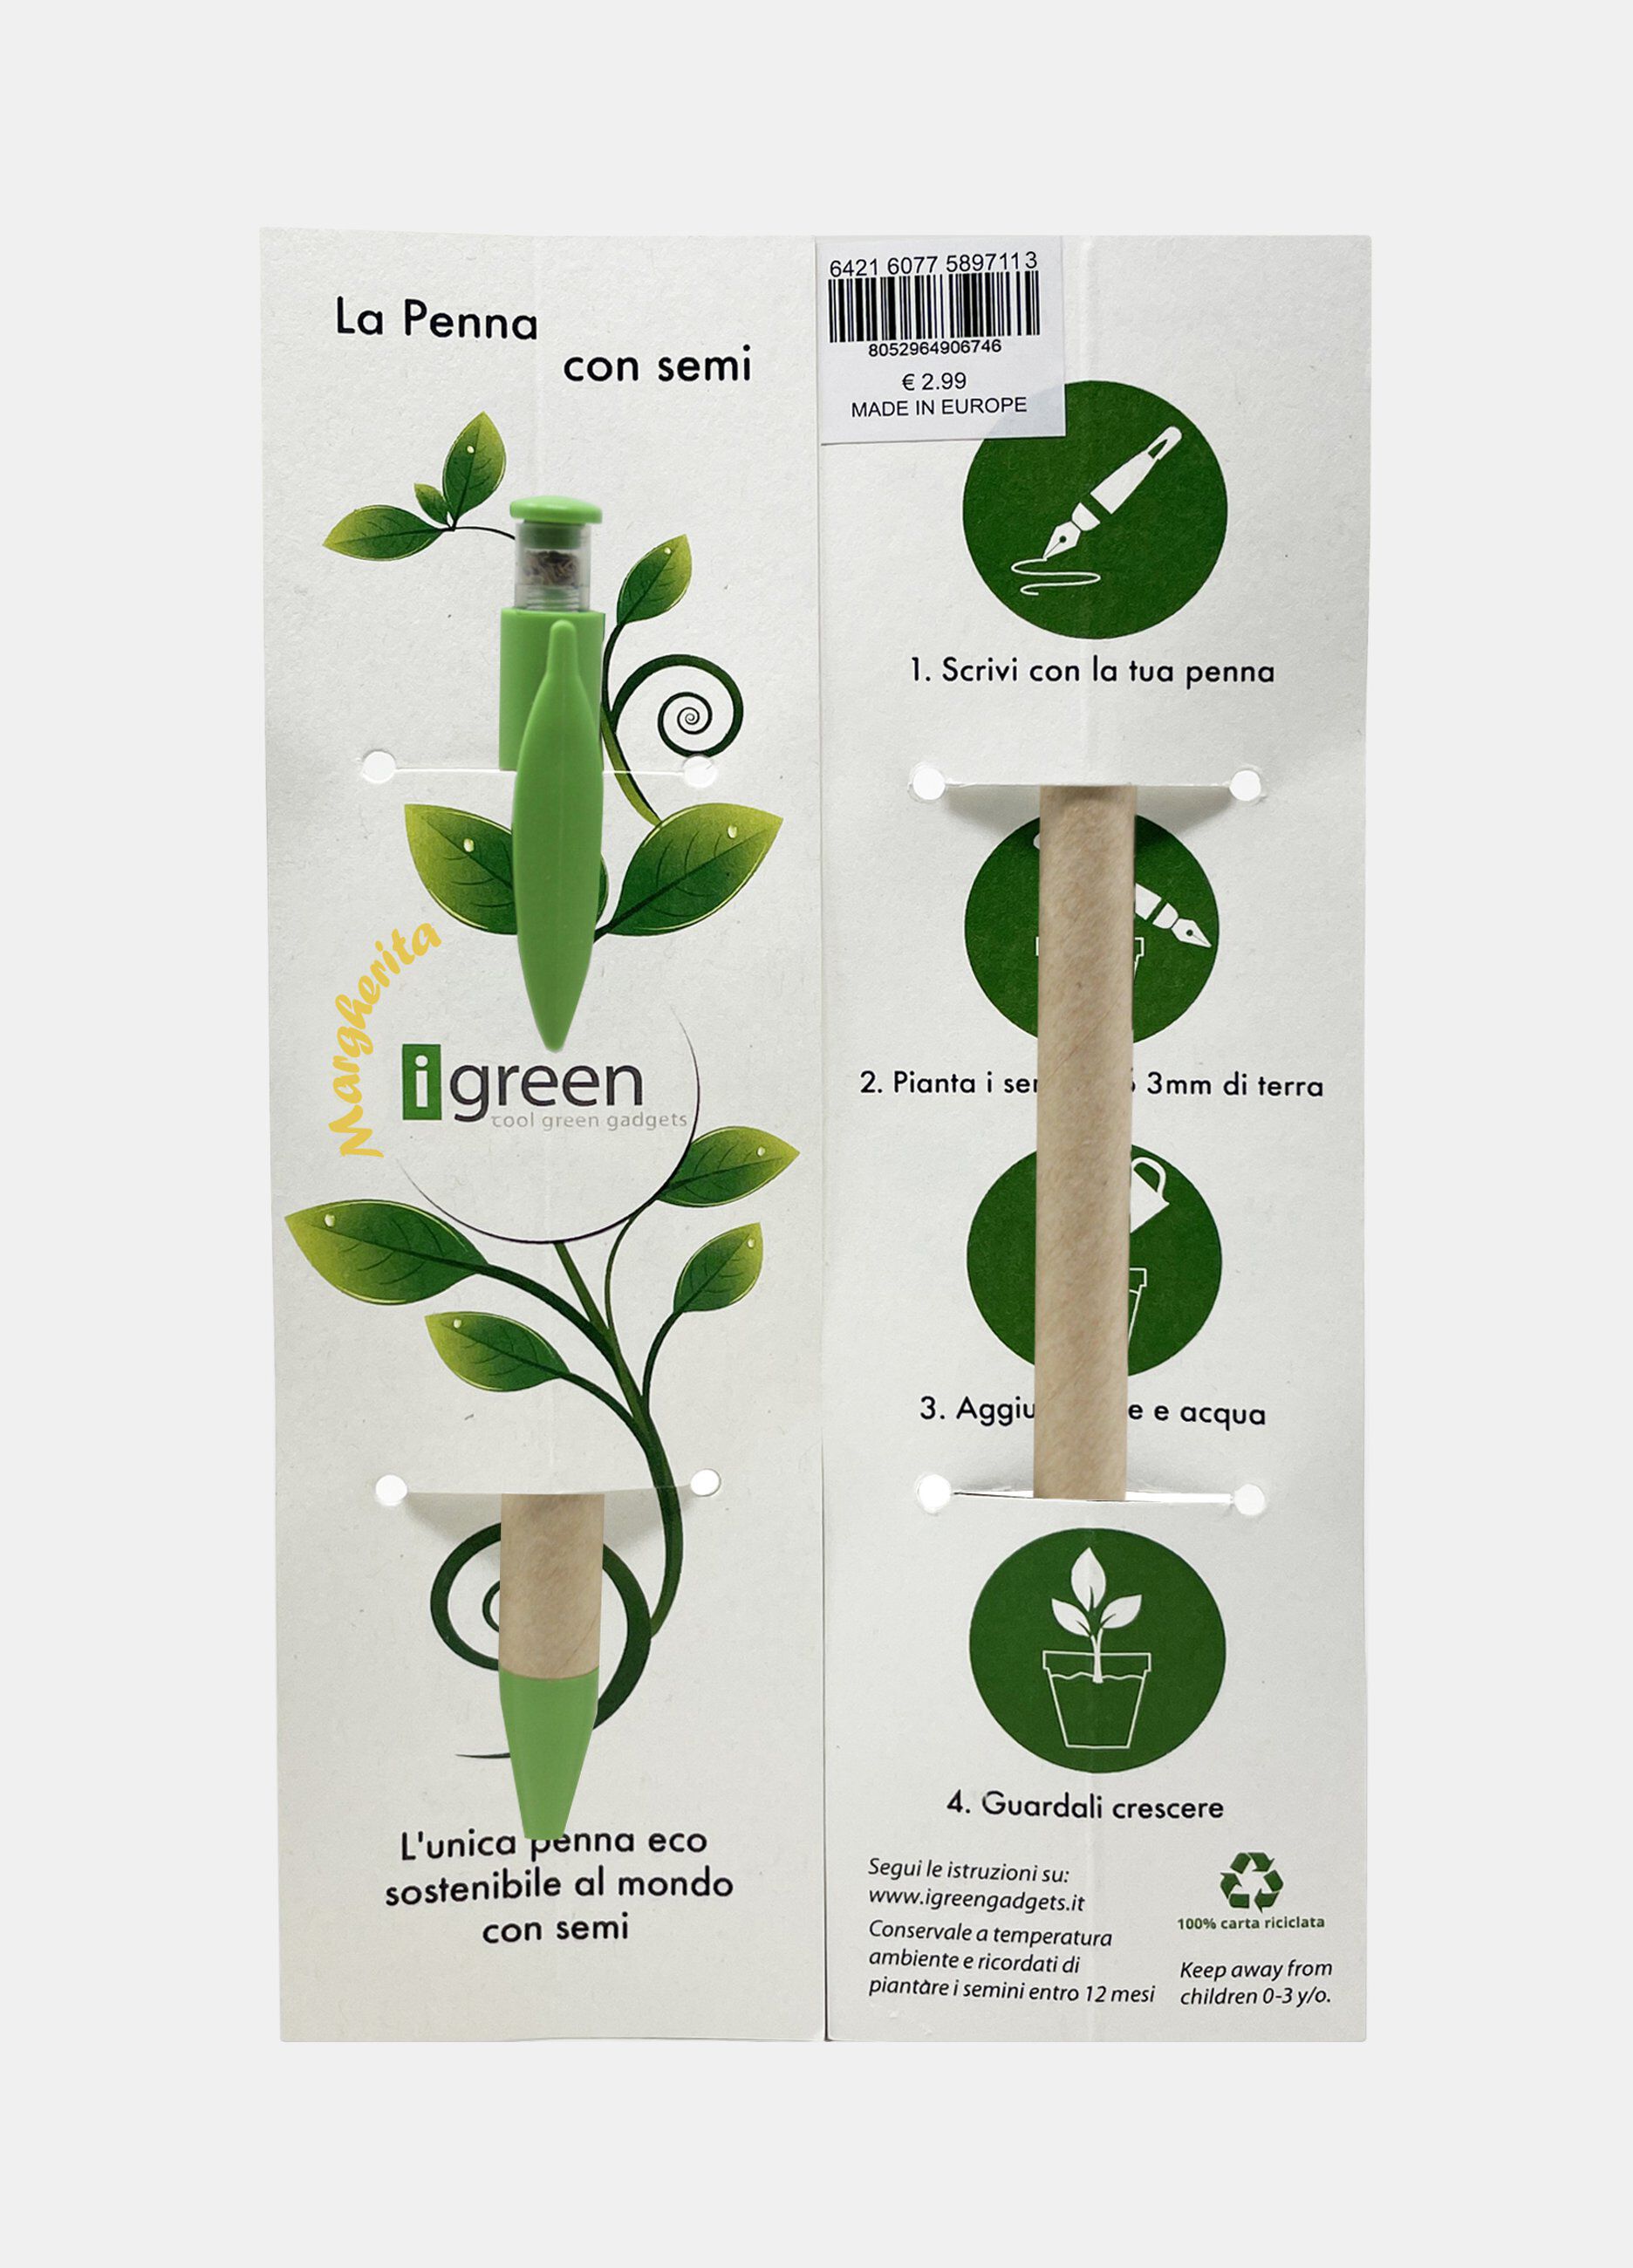 Penna I green ecosostenibile con semi Made in Italy